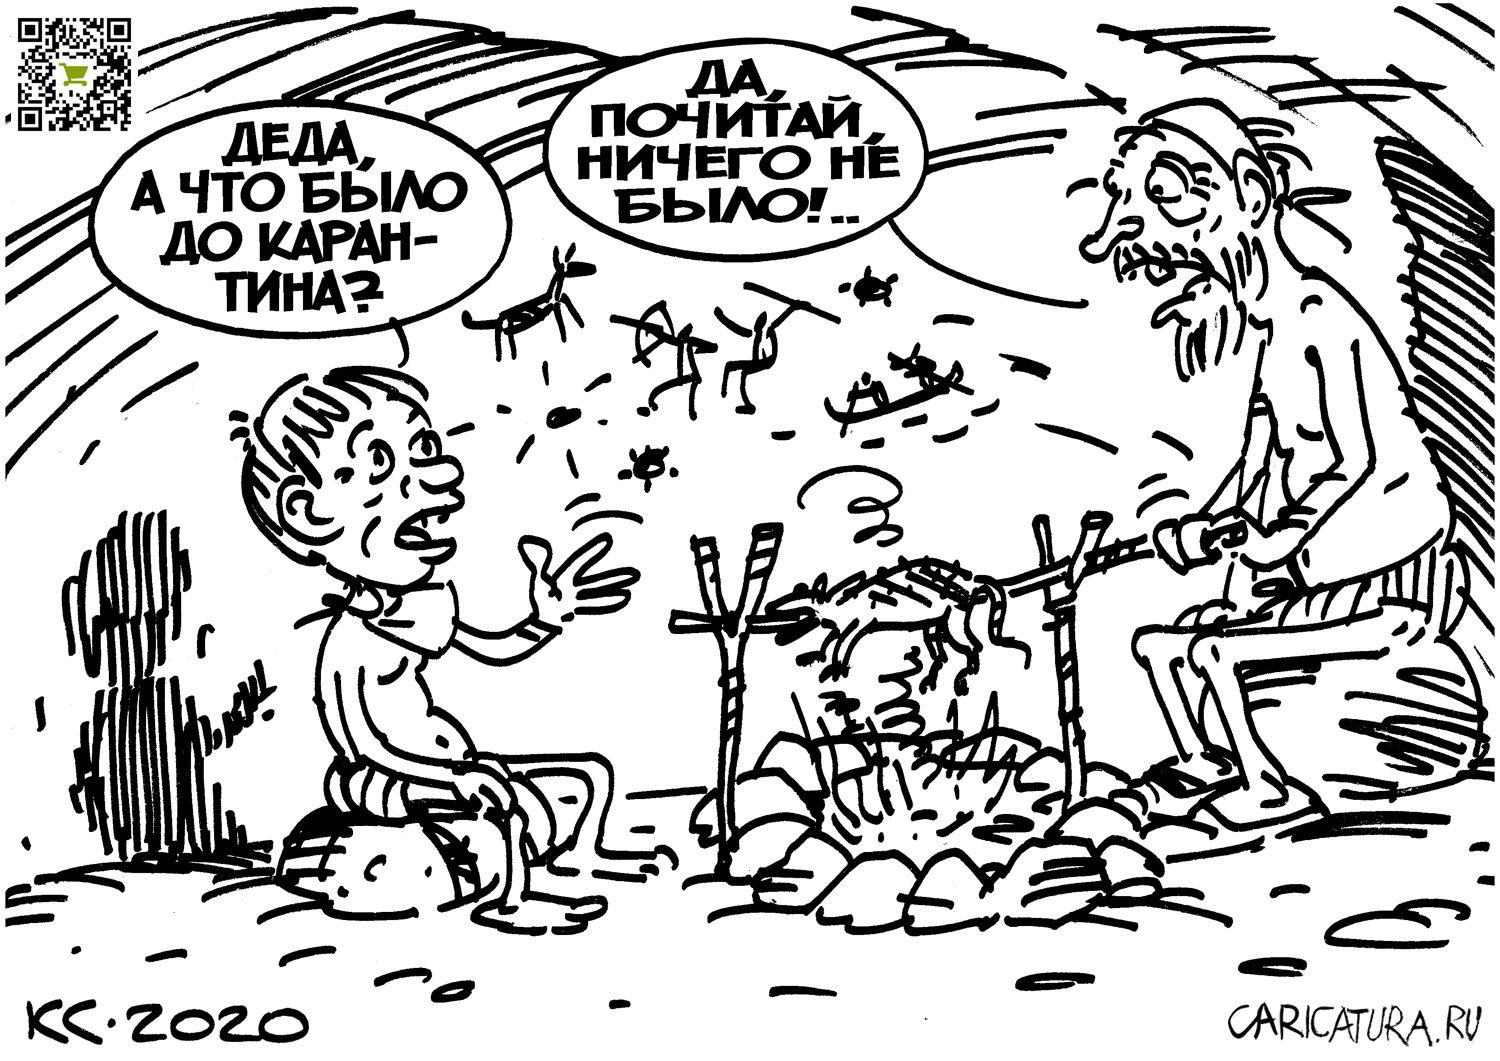 Карикатура "Что было до карантина", Вячеслав Капрельянц